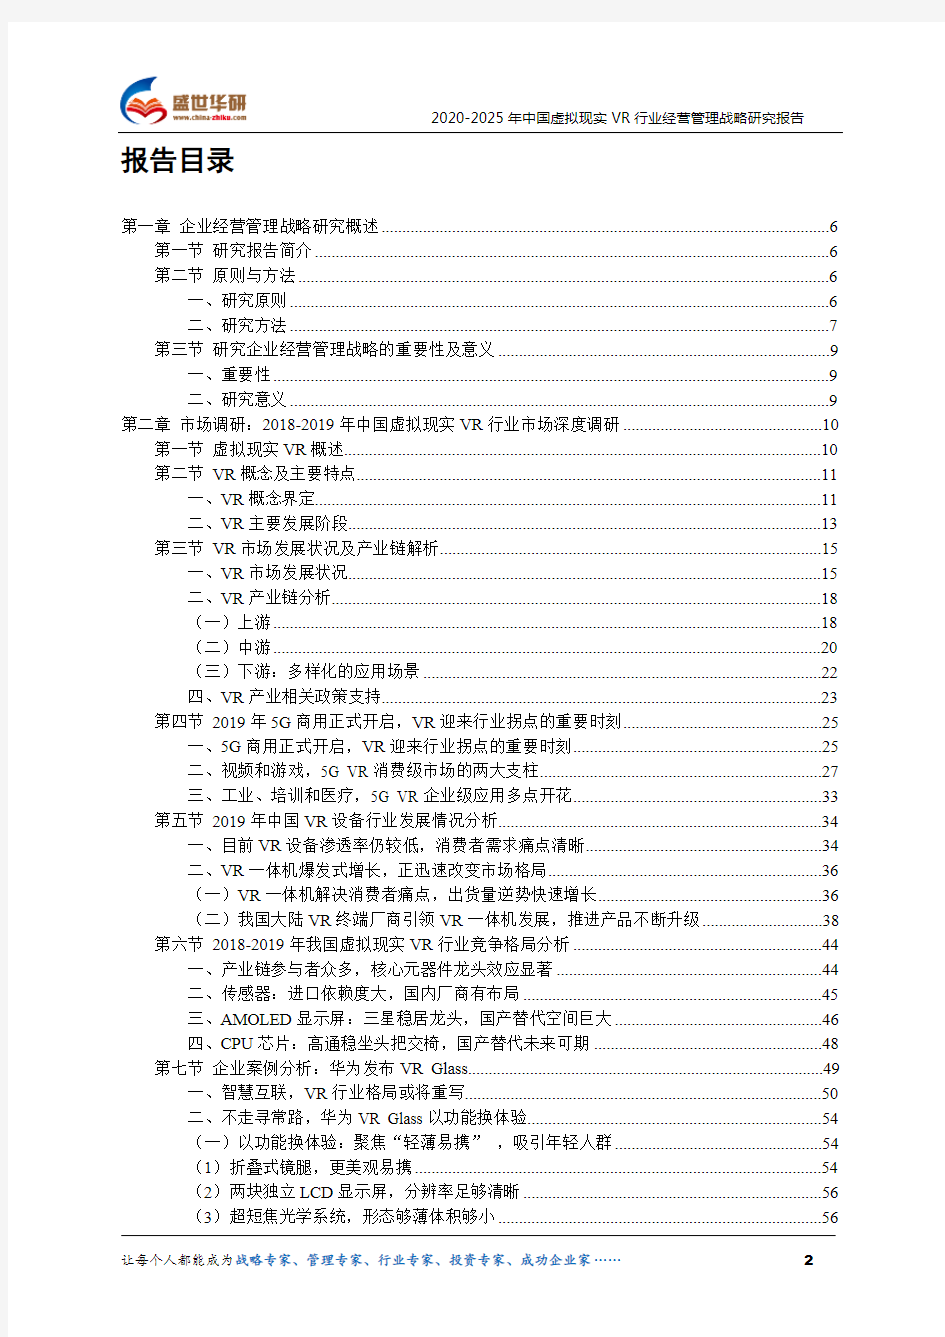 【完整版】2020-2025年中国虚拟现实VR行业经营管理战略研究报告